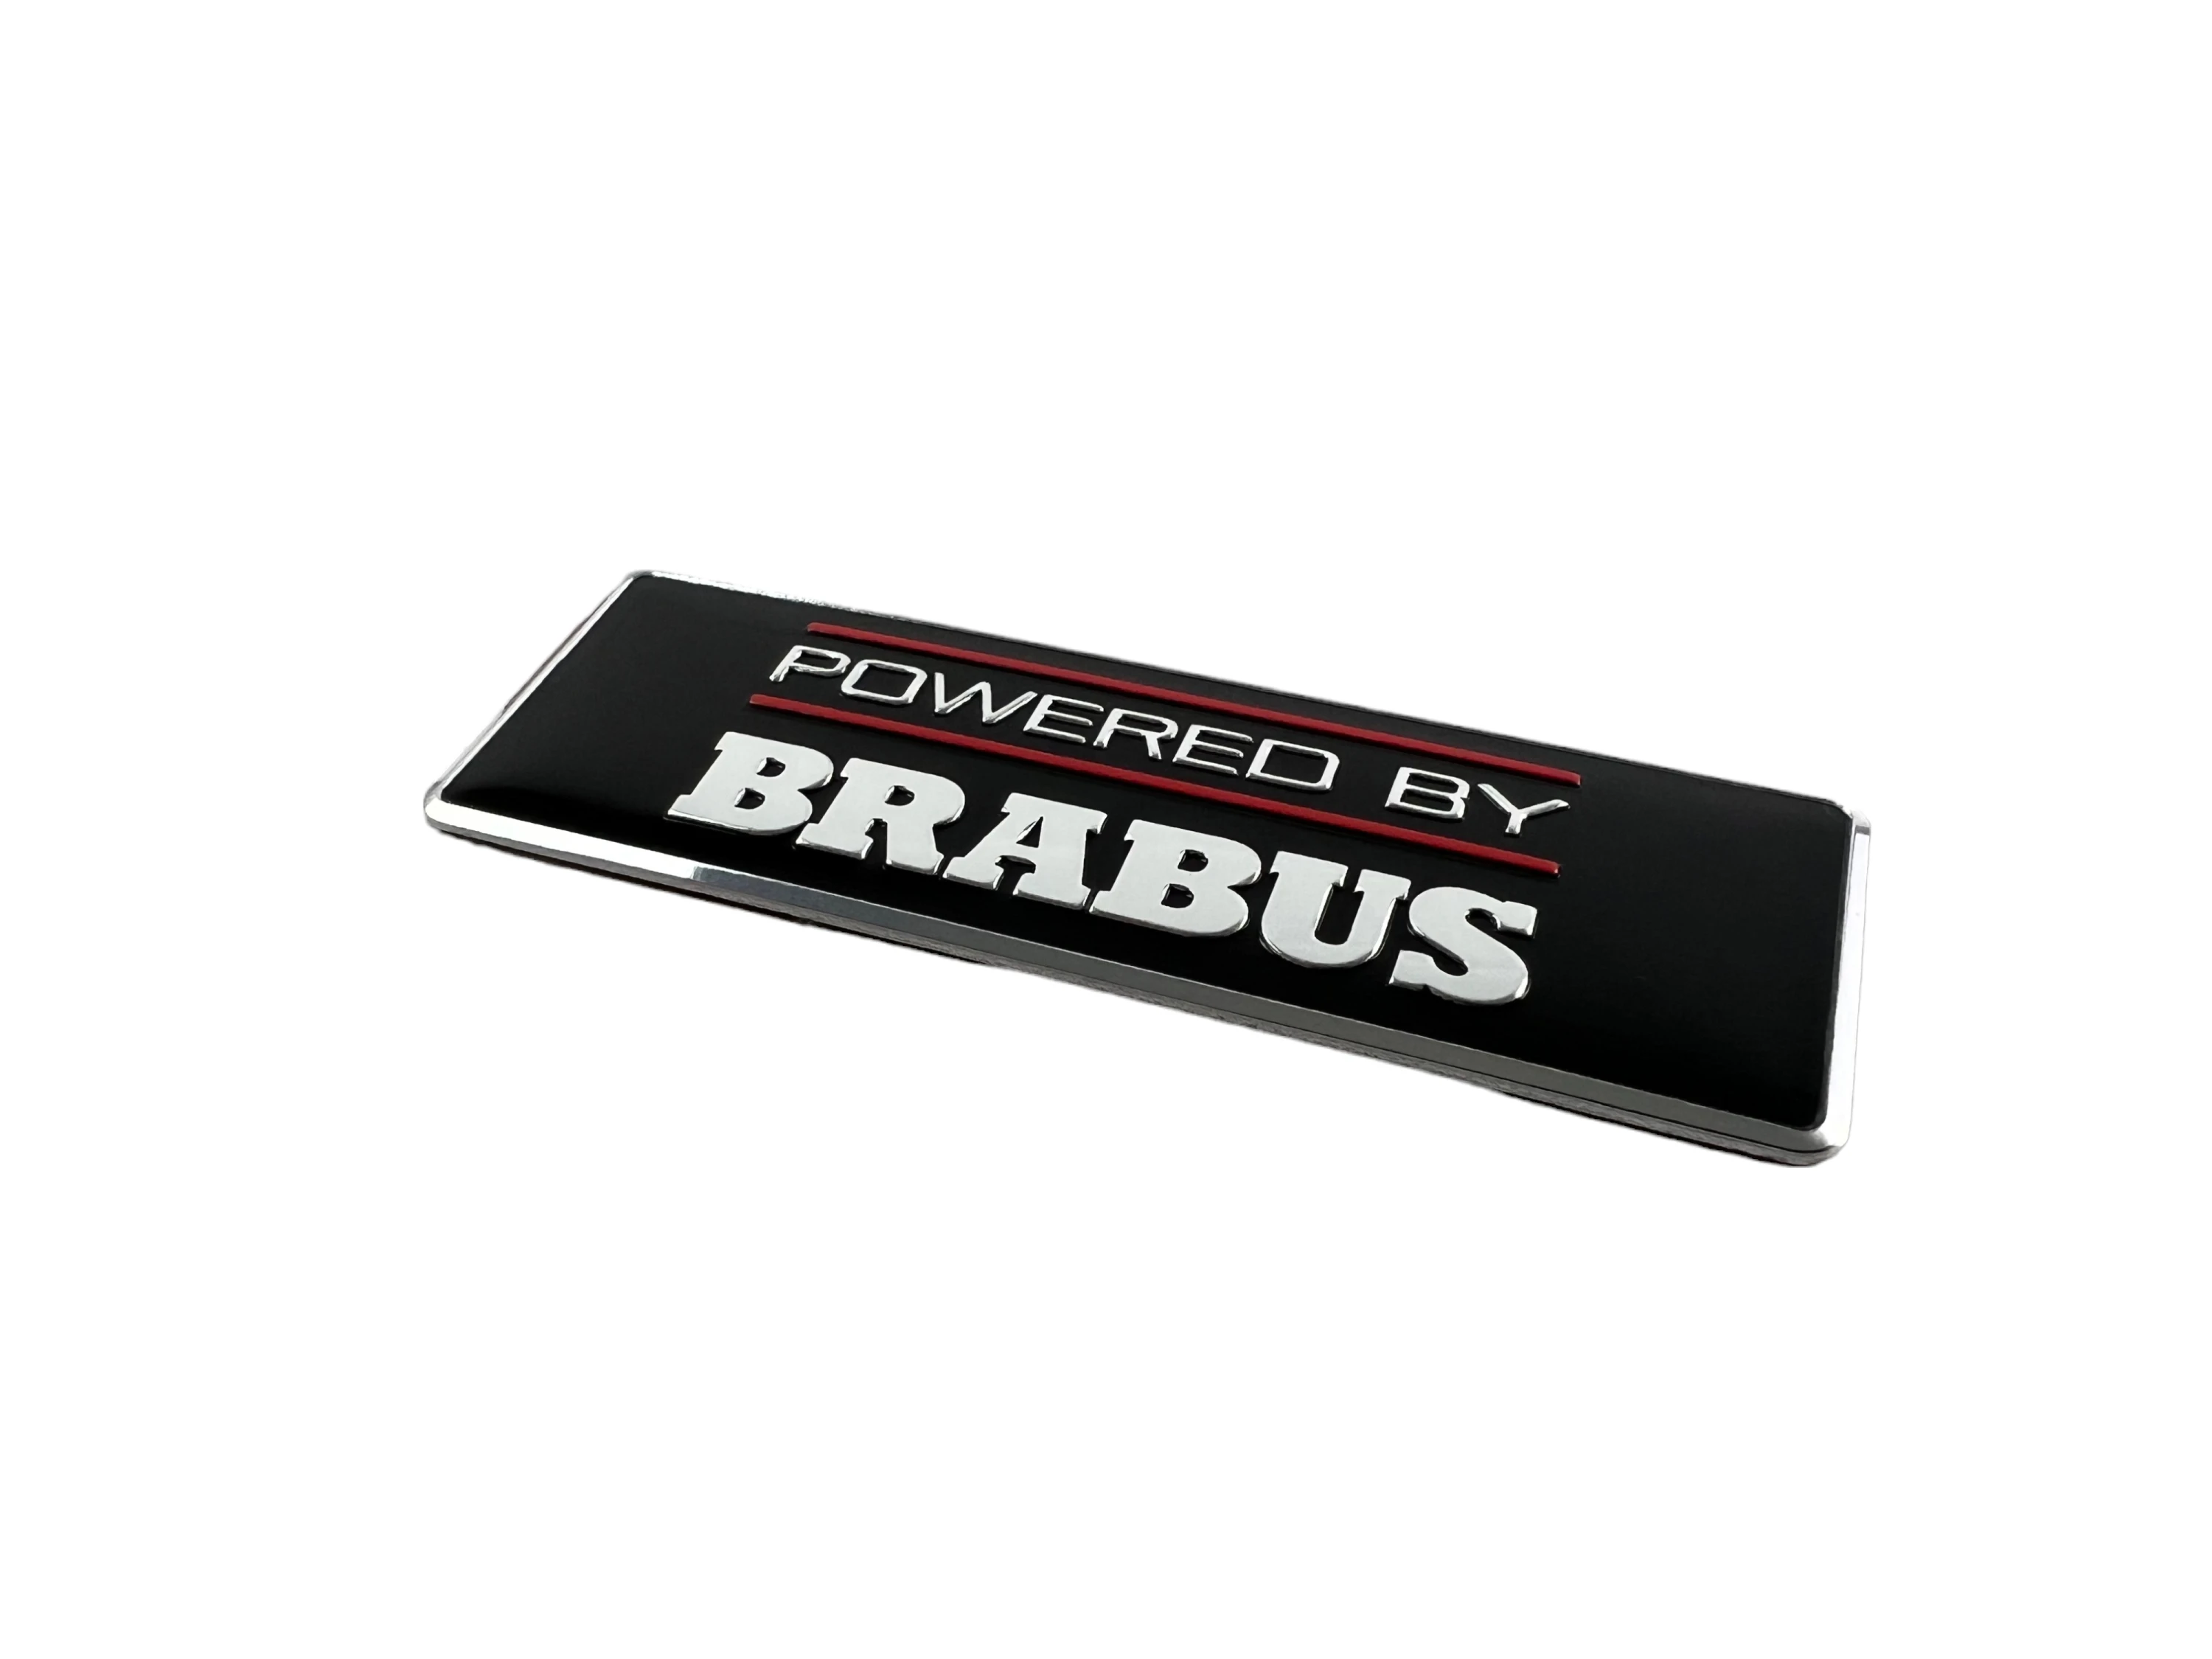 https://rs-original-carsupply.eu/media/image/24/59/9e/Brabus-Powered-By-Brabus-Logo_-004.webp